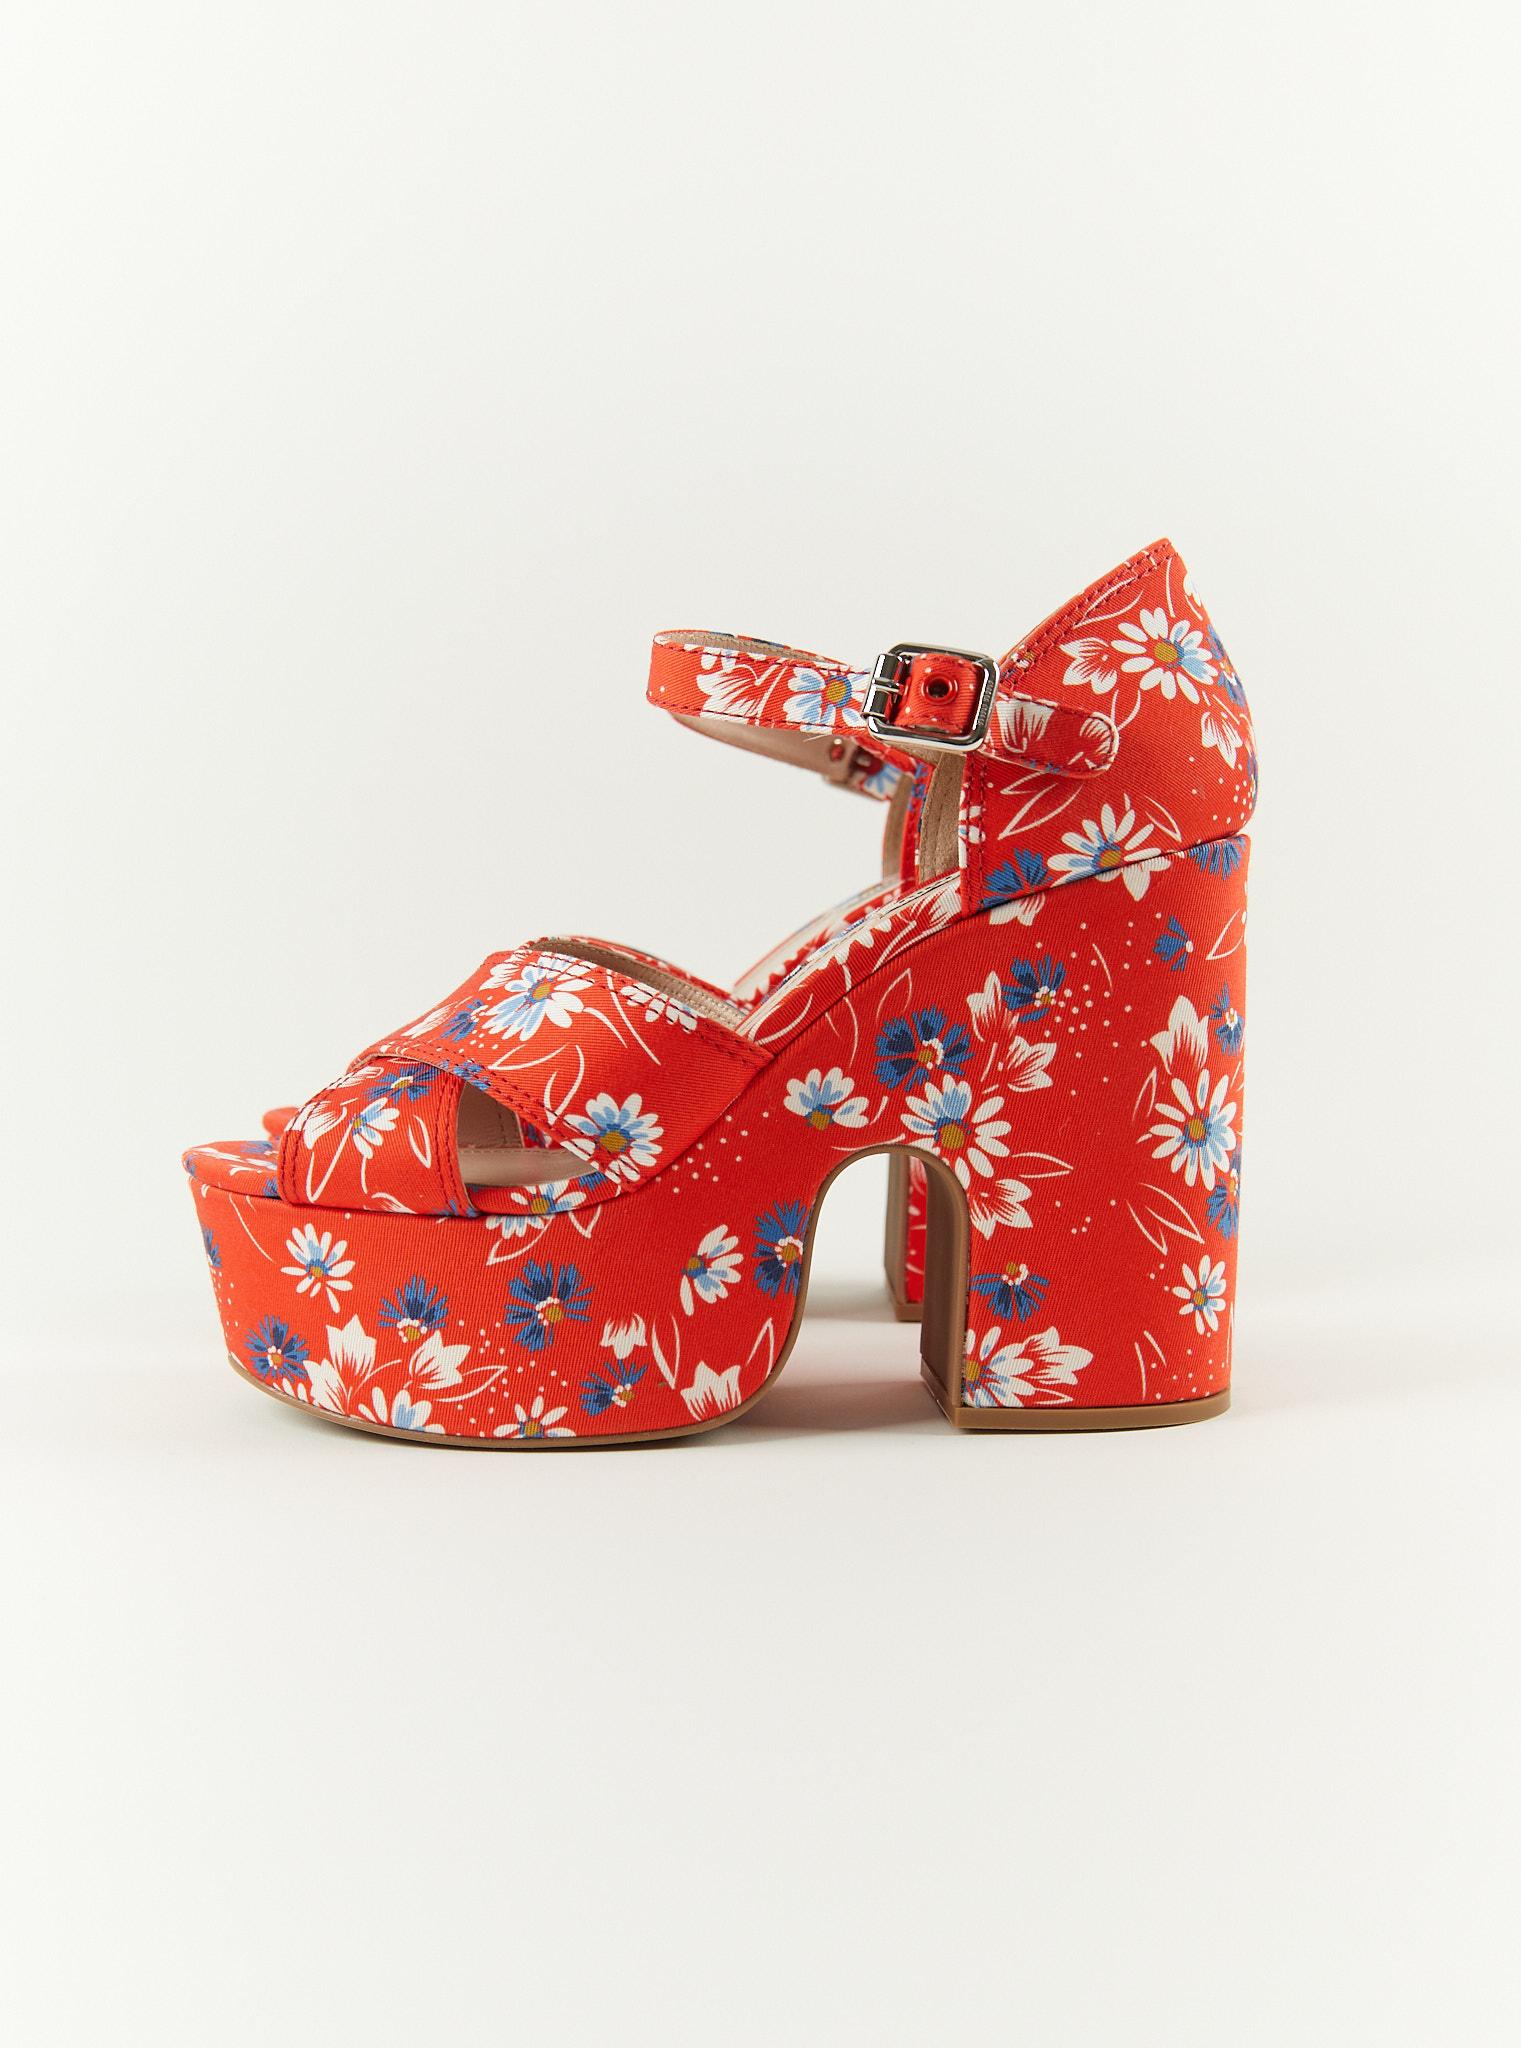 MIU MIU Daisy Print Twill Platform Sandals - Size 40.5 (EU) For Sale 1